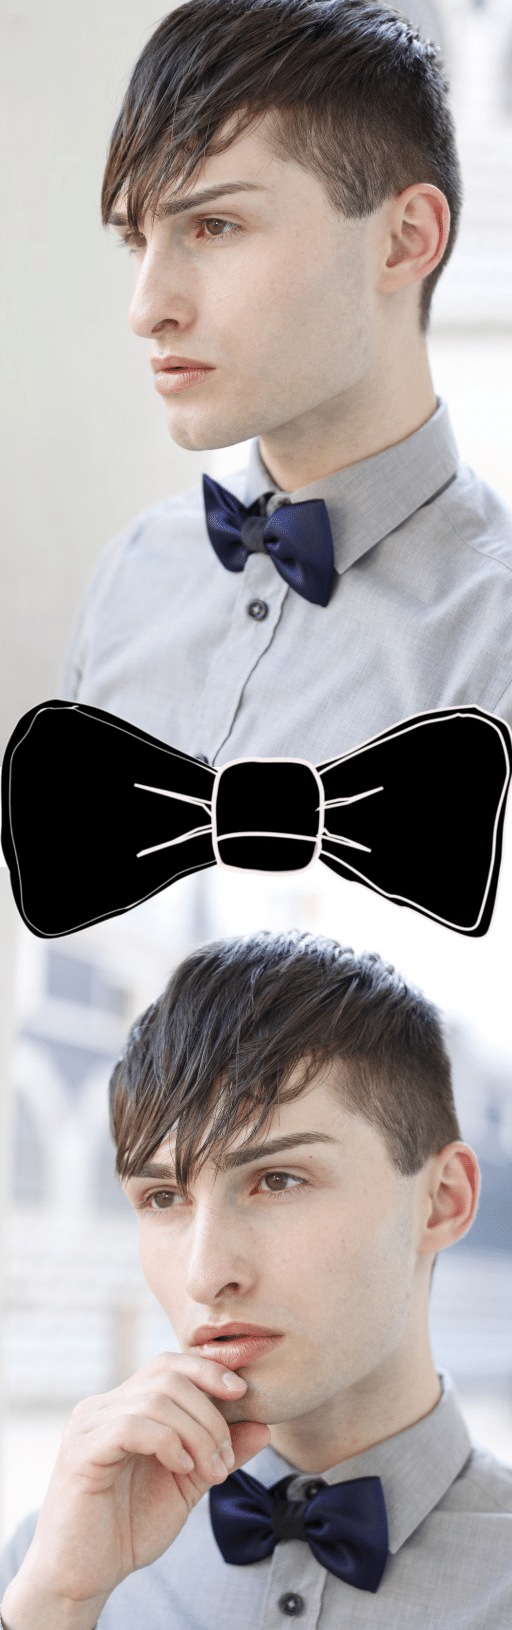 Fafigo Fliege Für Männer - Bow Tie for Man - Fashion Blog Männer - Mister Matthew - 9